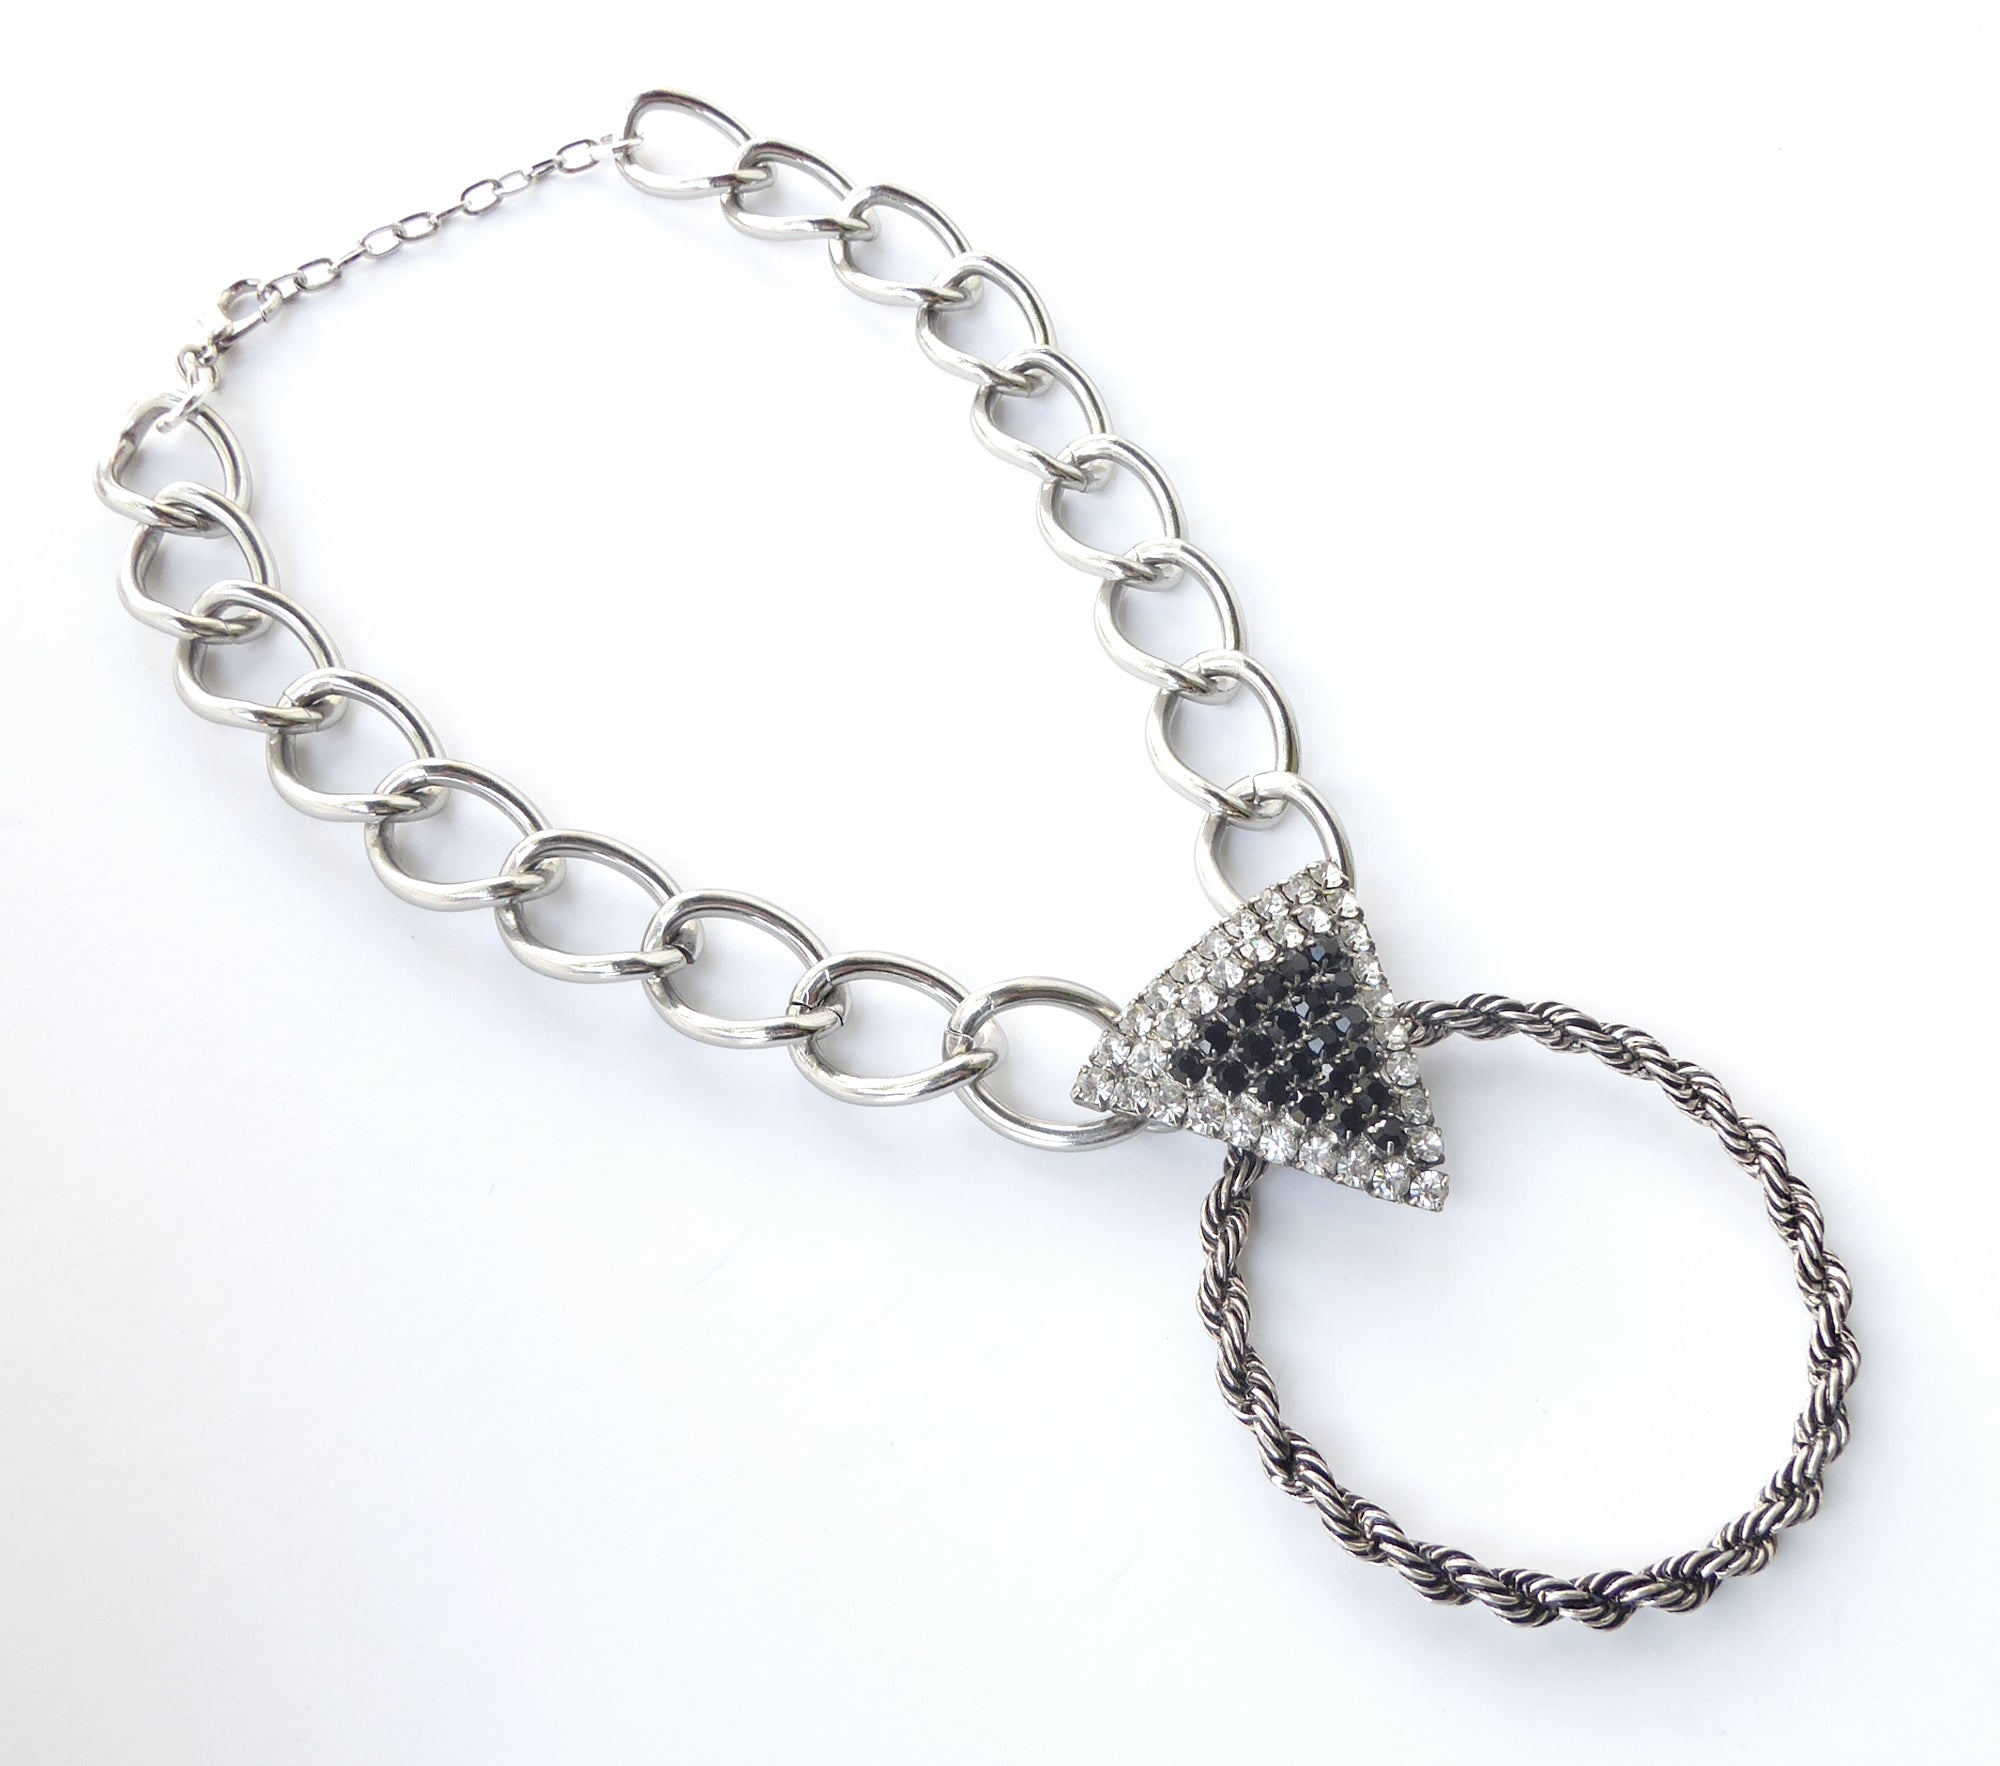 Rhinestone triangle necklace by Jenny Dayco 2